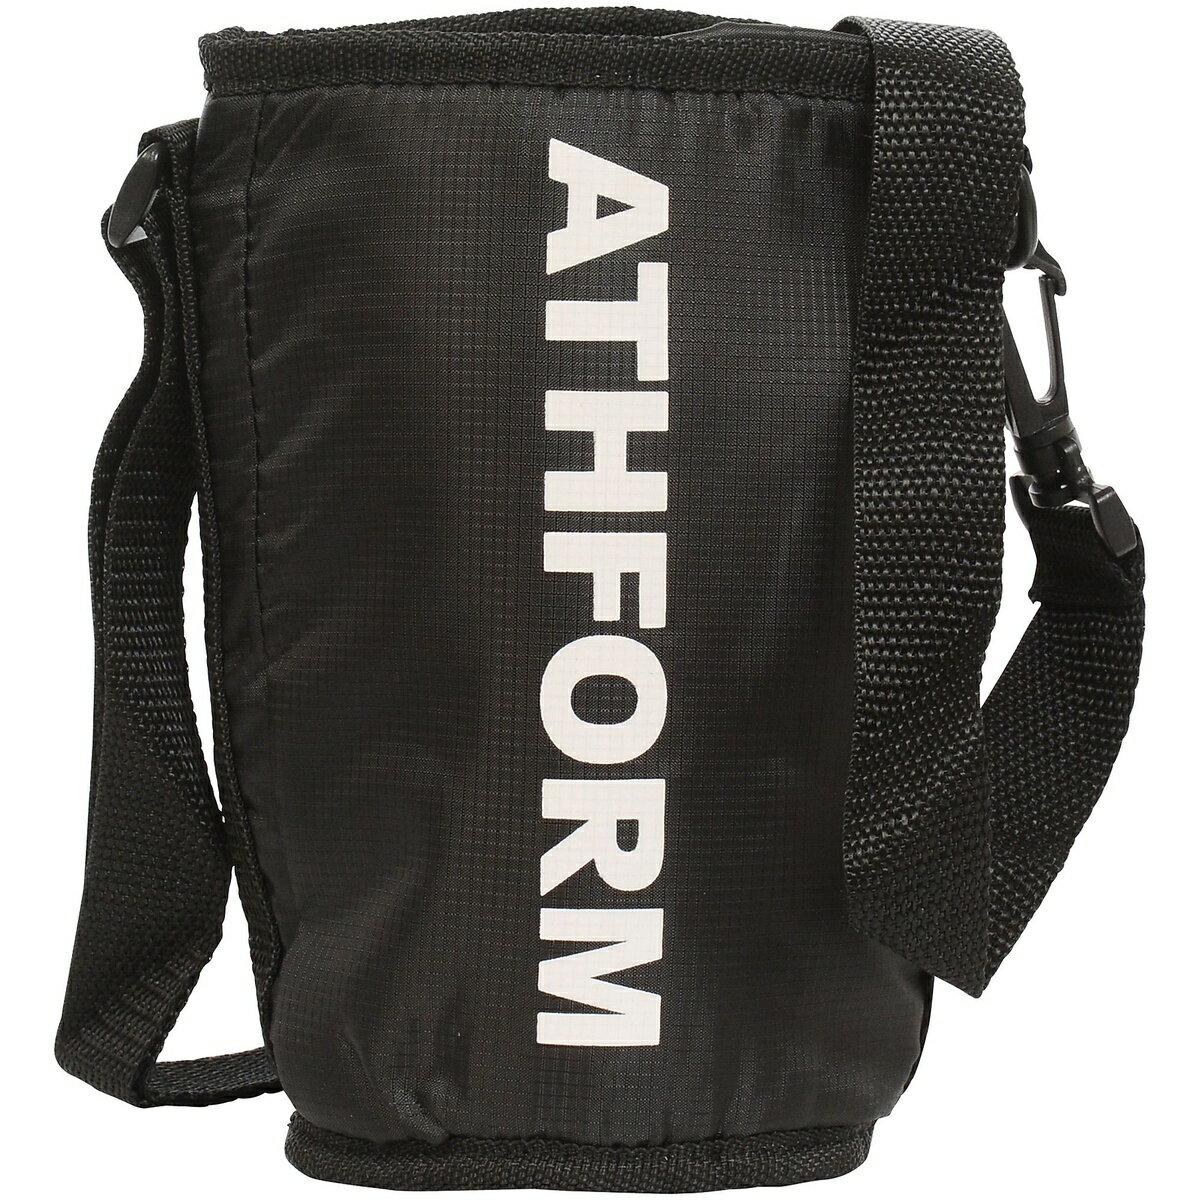 アスフォーム (ATHFORM) スクイズボトルケース フィットネス 健康 ボトル カバー ブラック AF-Y19-006-007